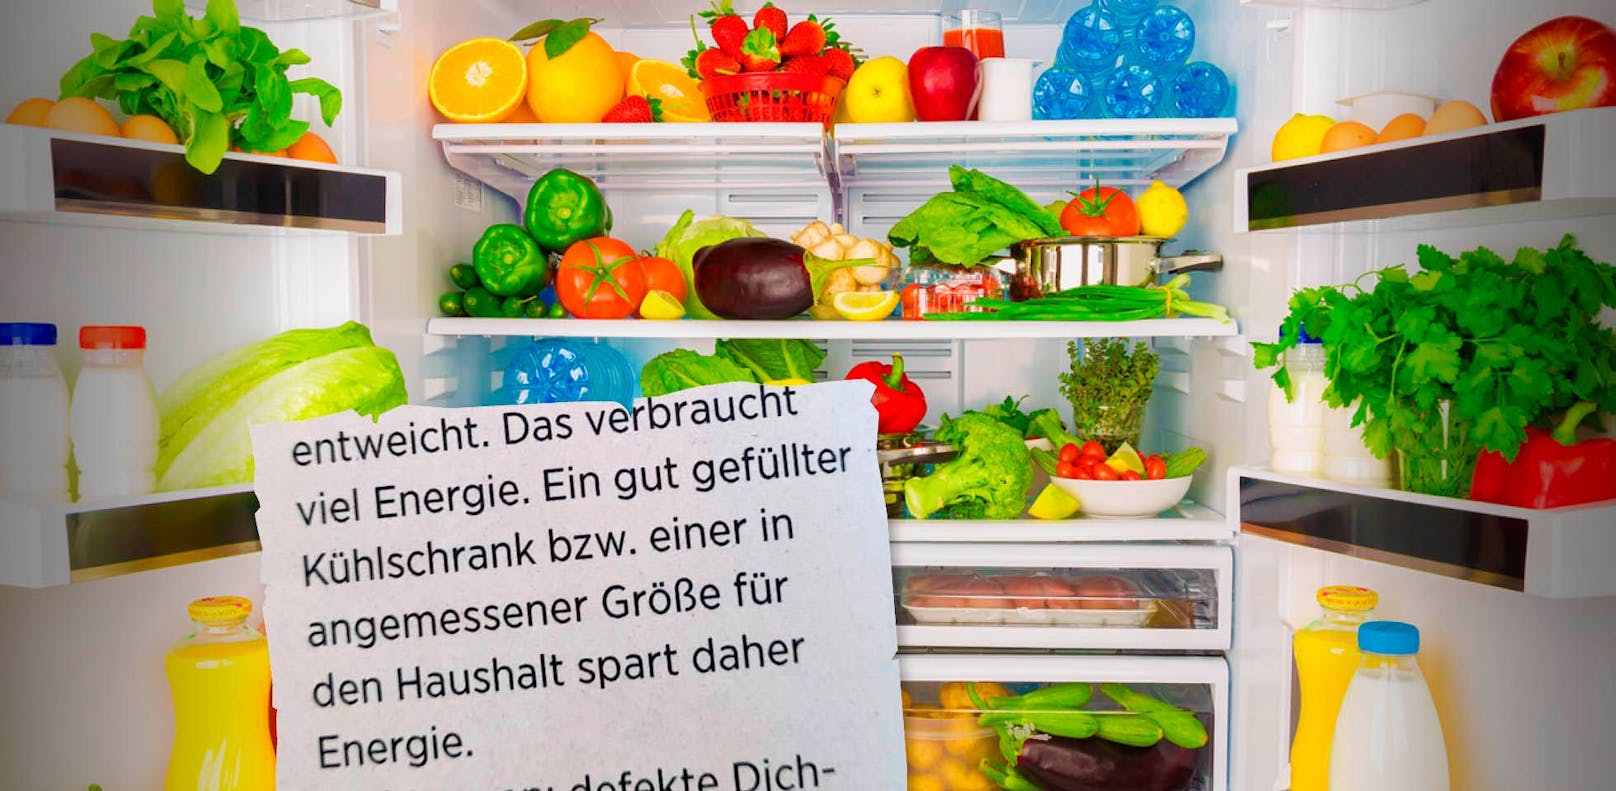 Energiespartipp in Zeiten der Teuerung: "Gut gefüllter Kühlschrank"